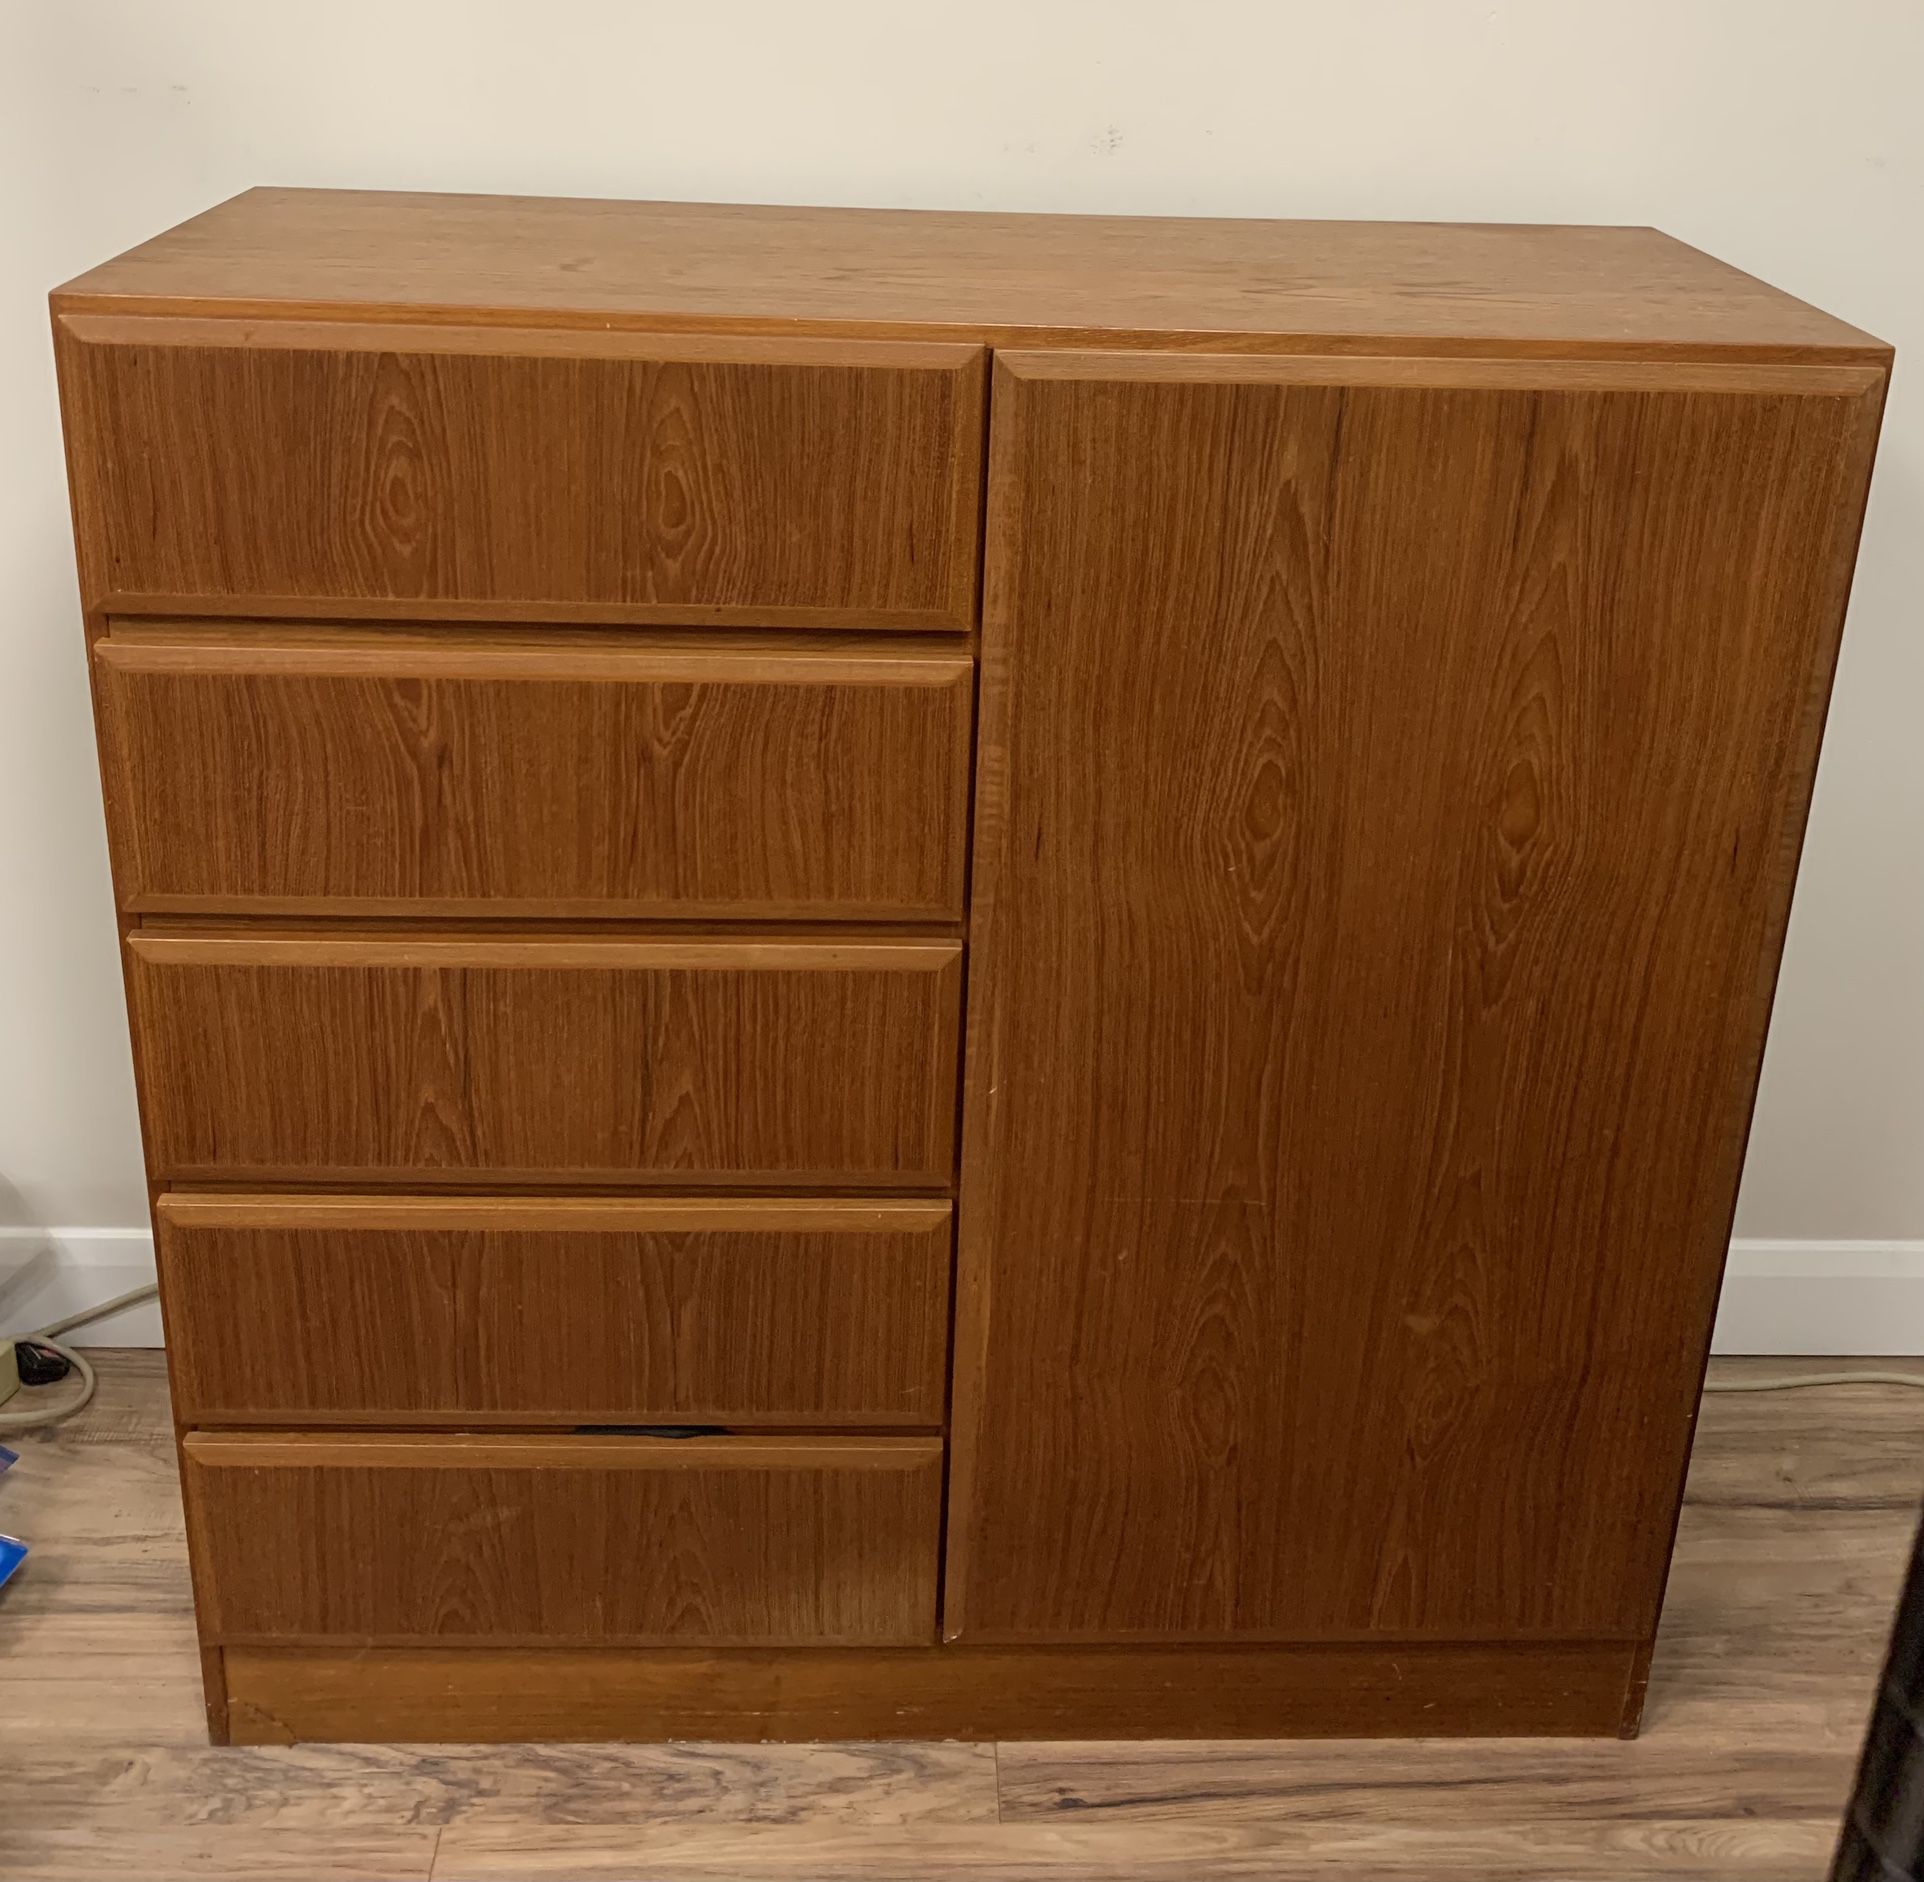 Wardobe Dresser 45.5”x18”x46” Tall